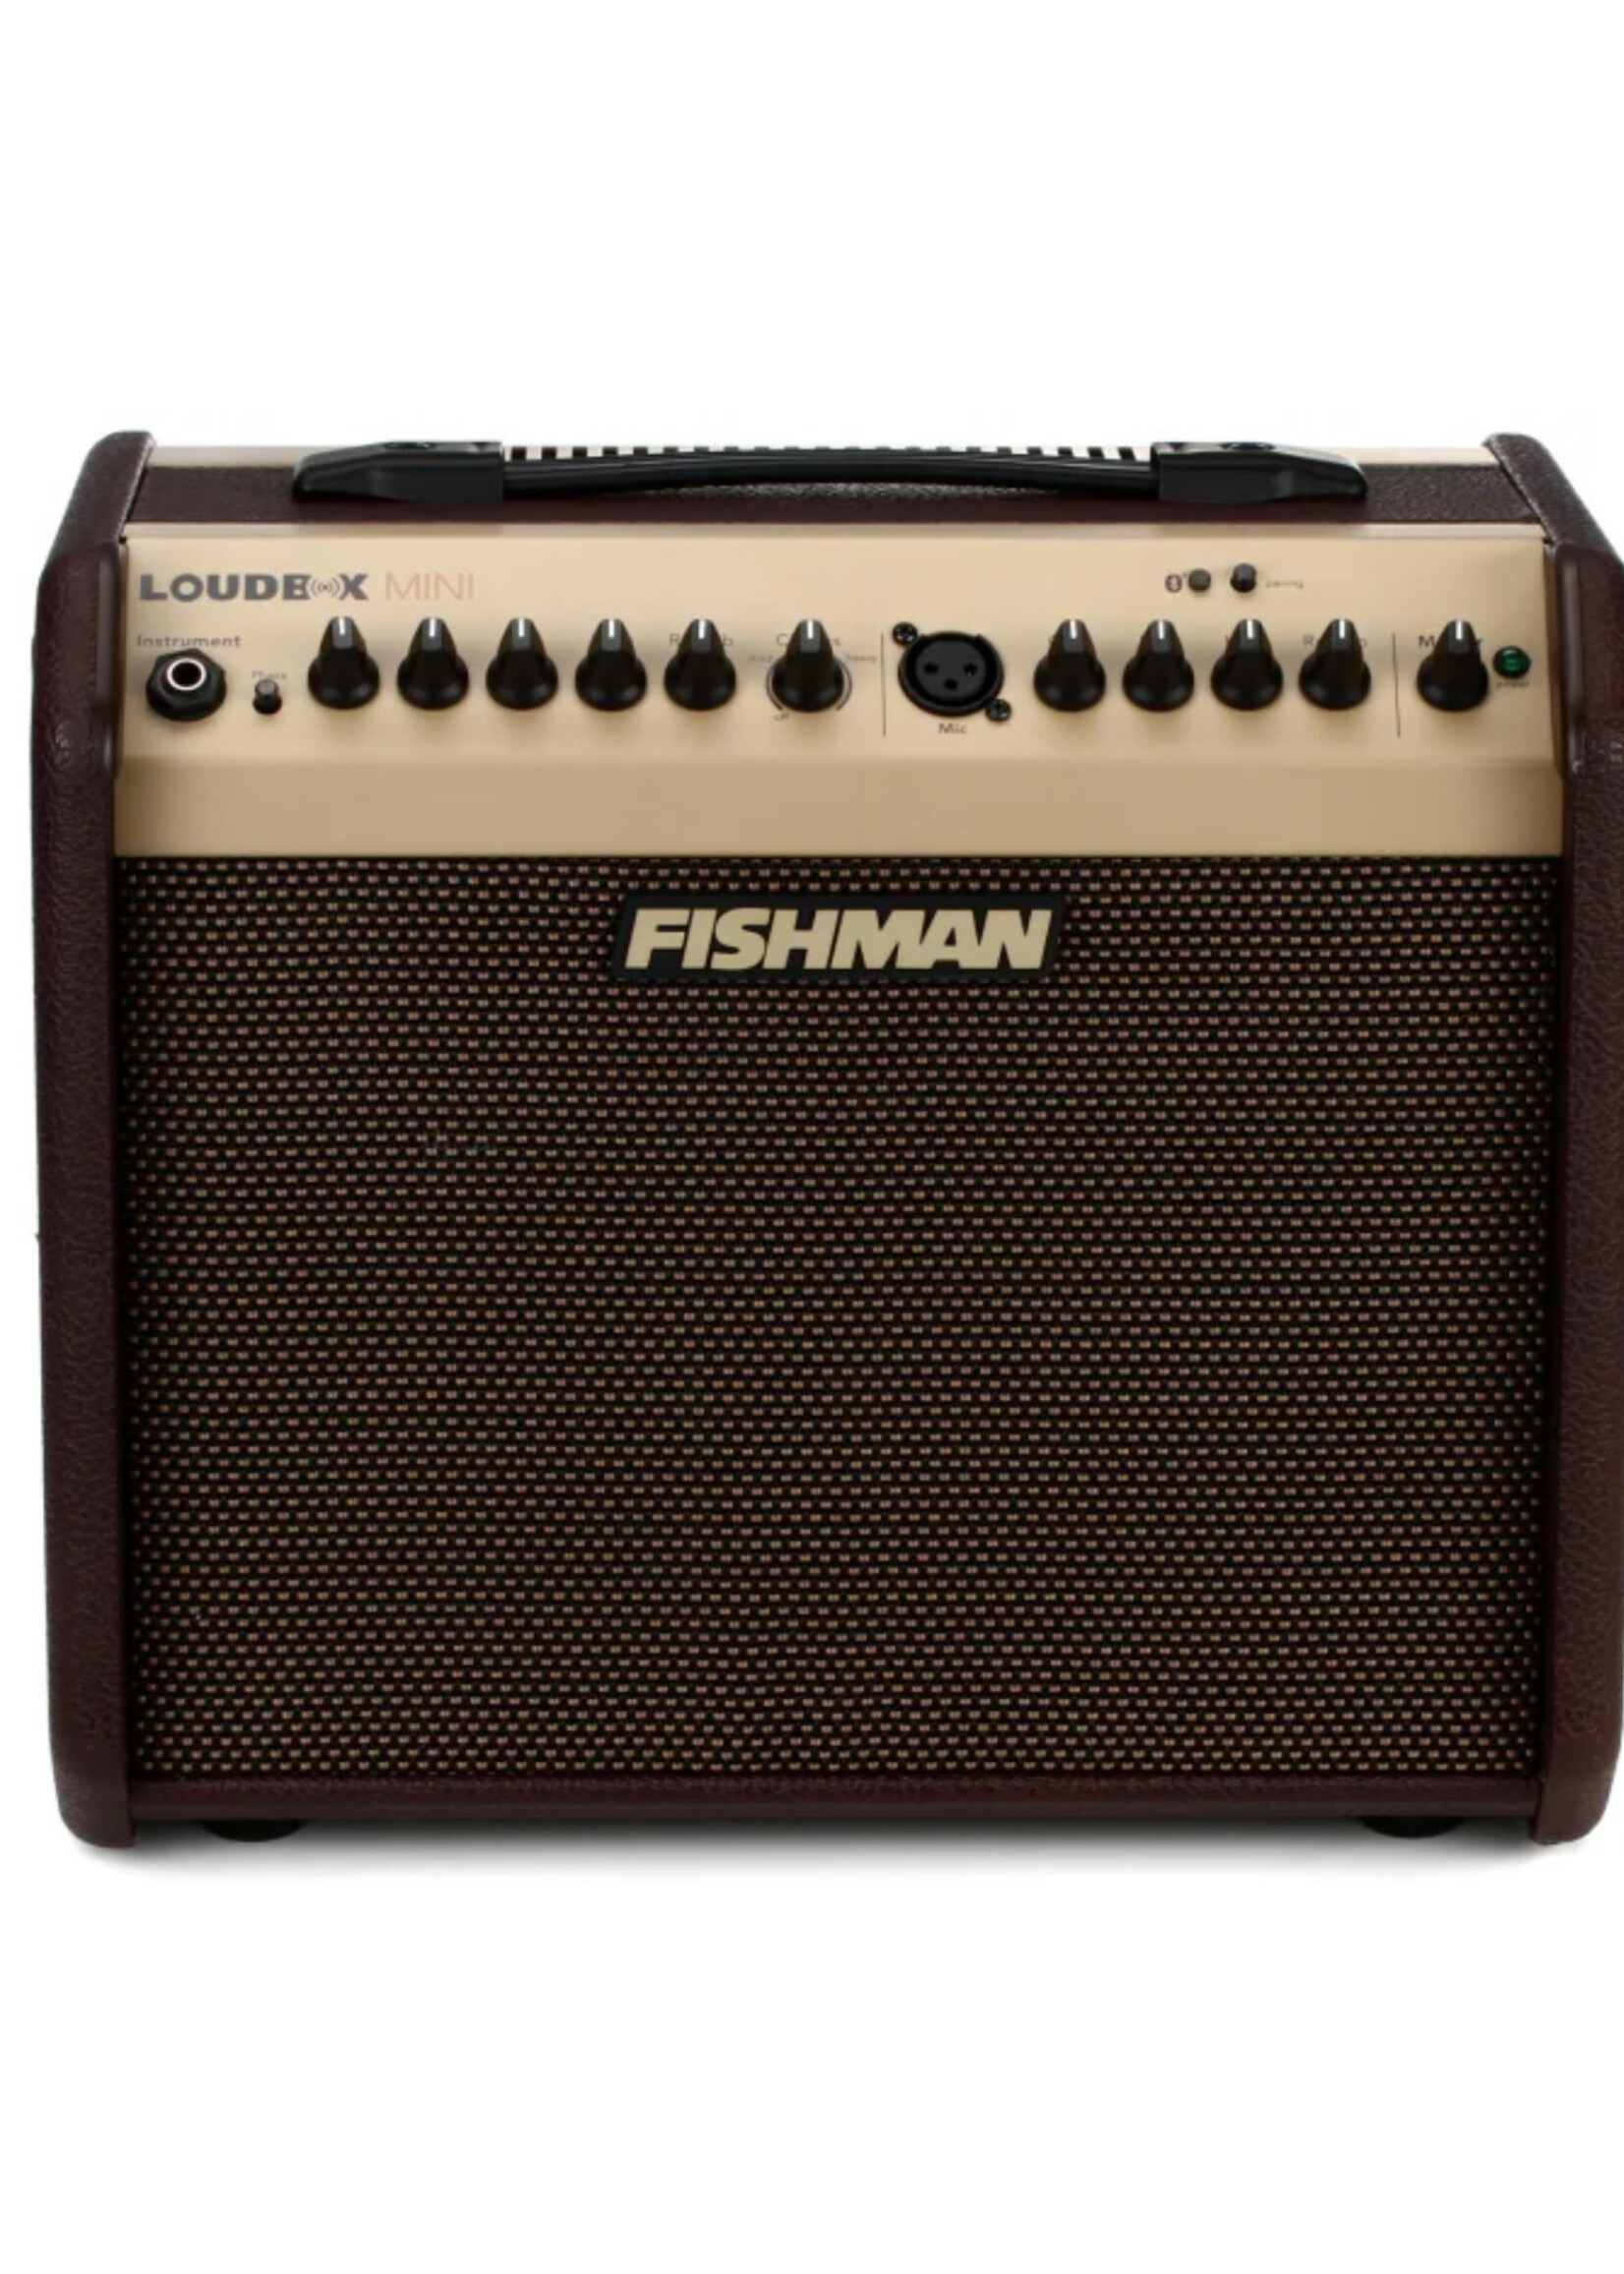 Fishman FIshman LOUDBOX MINI + BT, US 120V